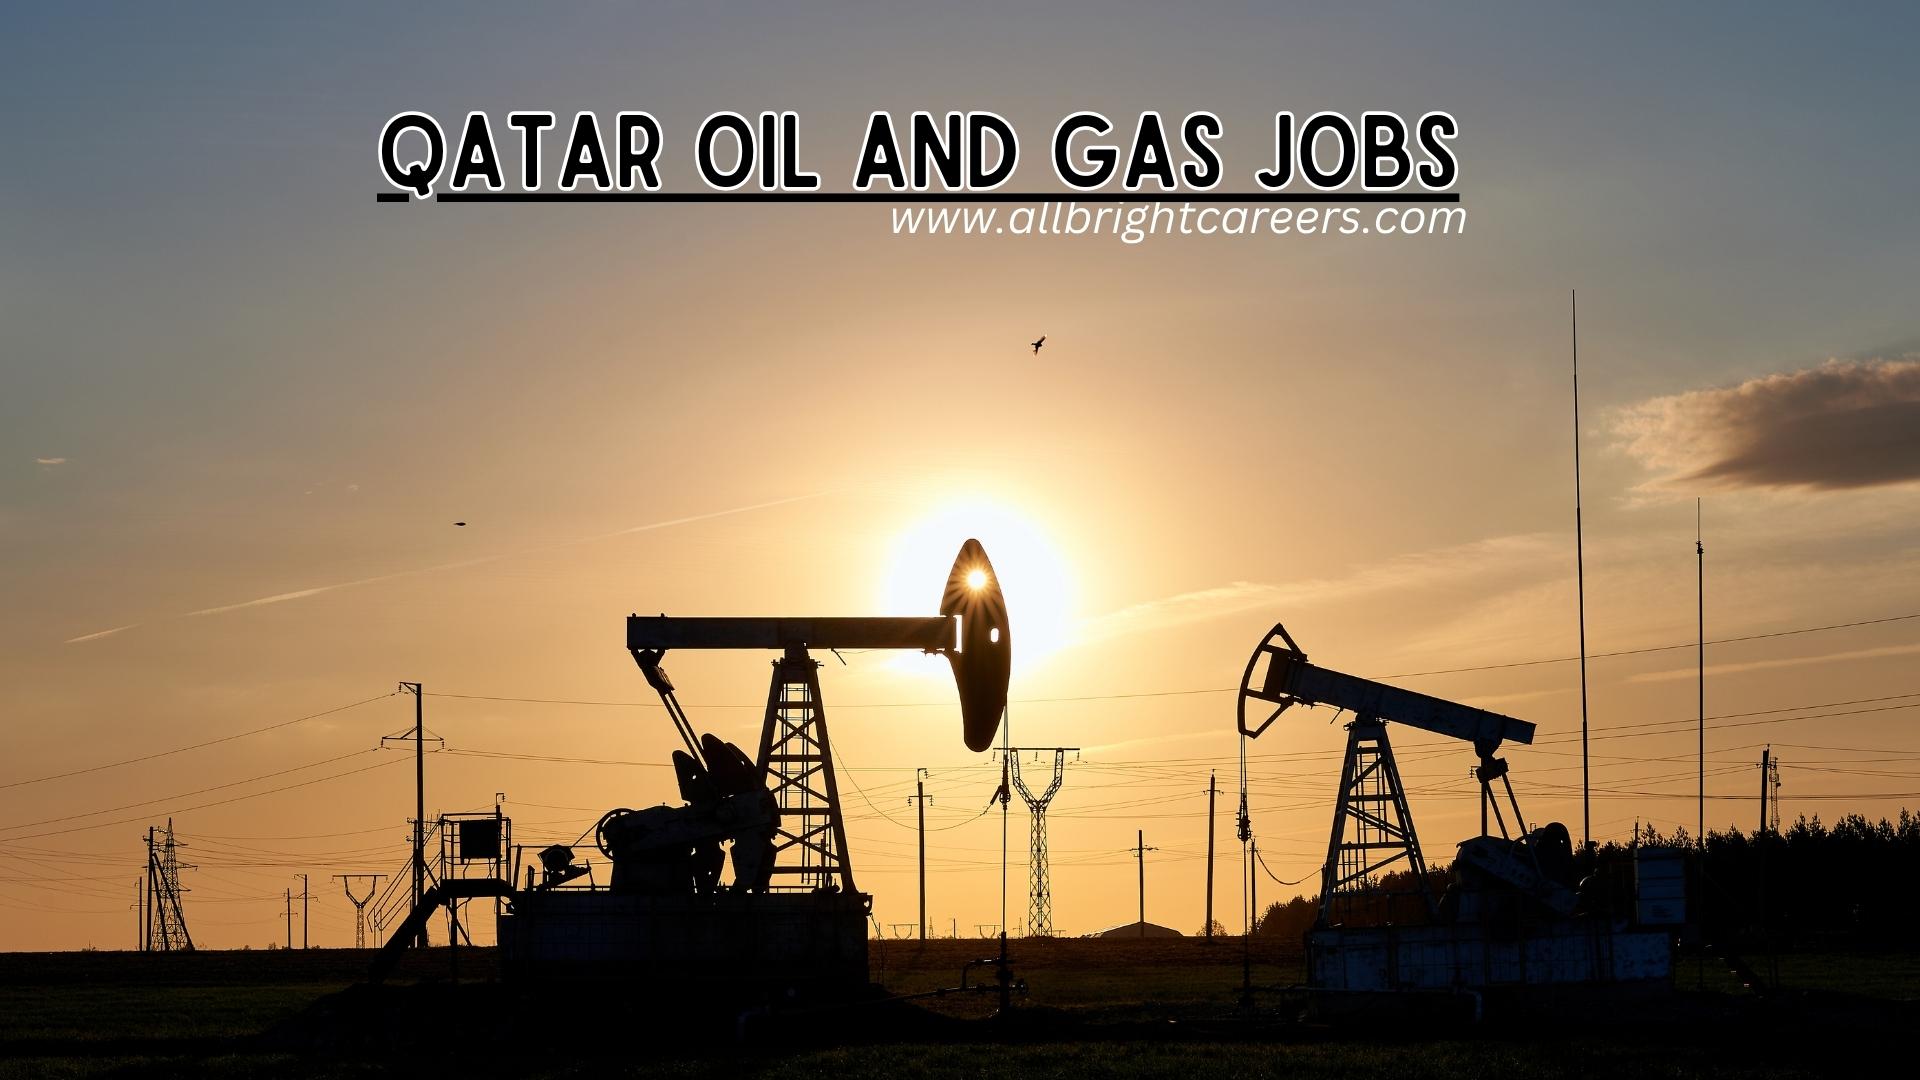 Qatar Oil And Gas jobs